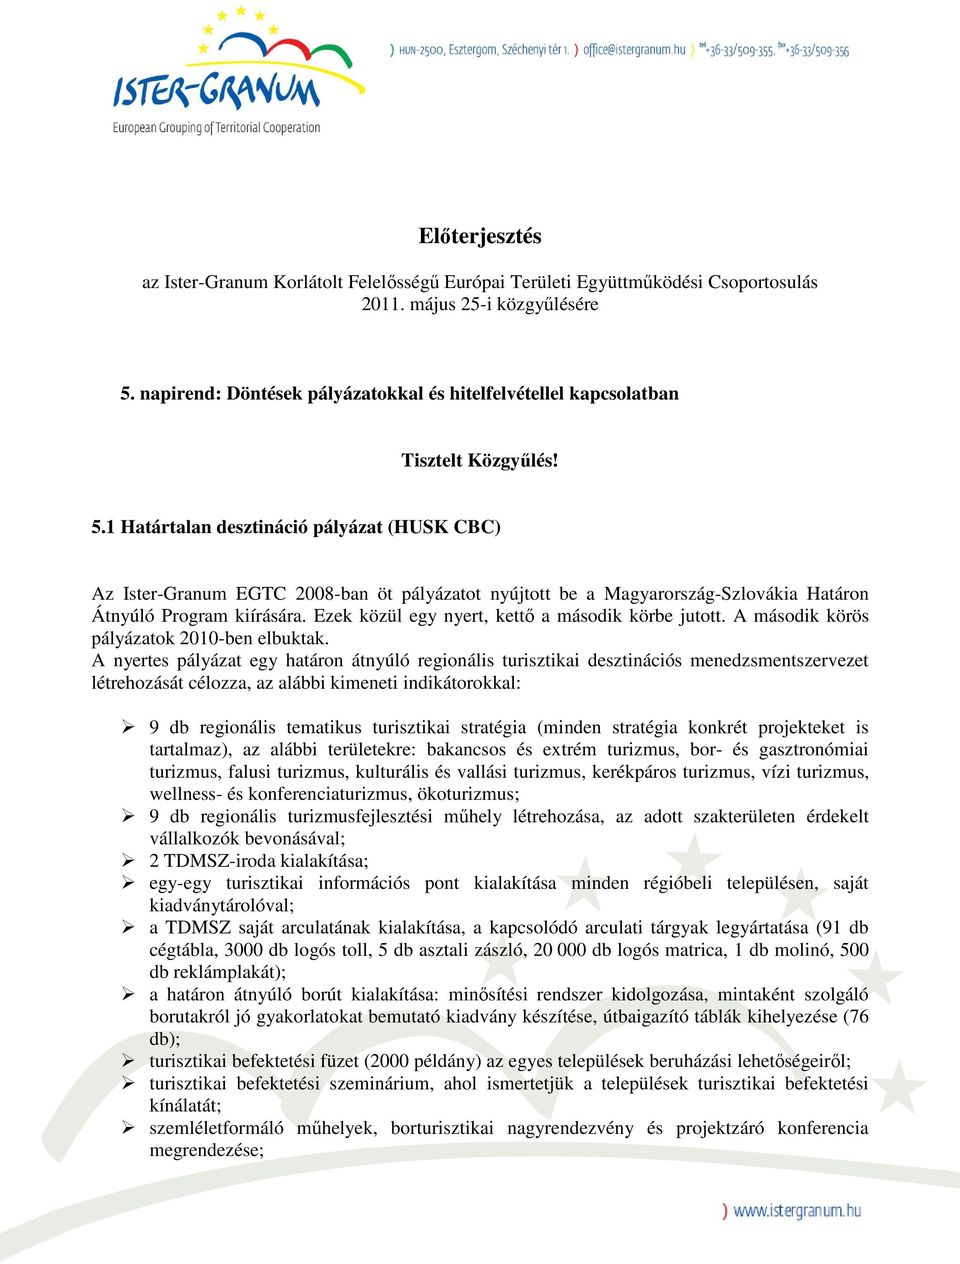 1 Határtalan desztináció pályázat (HUSK CBC) Az Ister-Granum EGTC 2008-ban öt pályázatot nyújtott be a Magyarország-Szlovákia Határon Átnyúló Program kiírására.